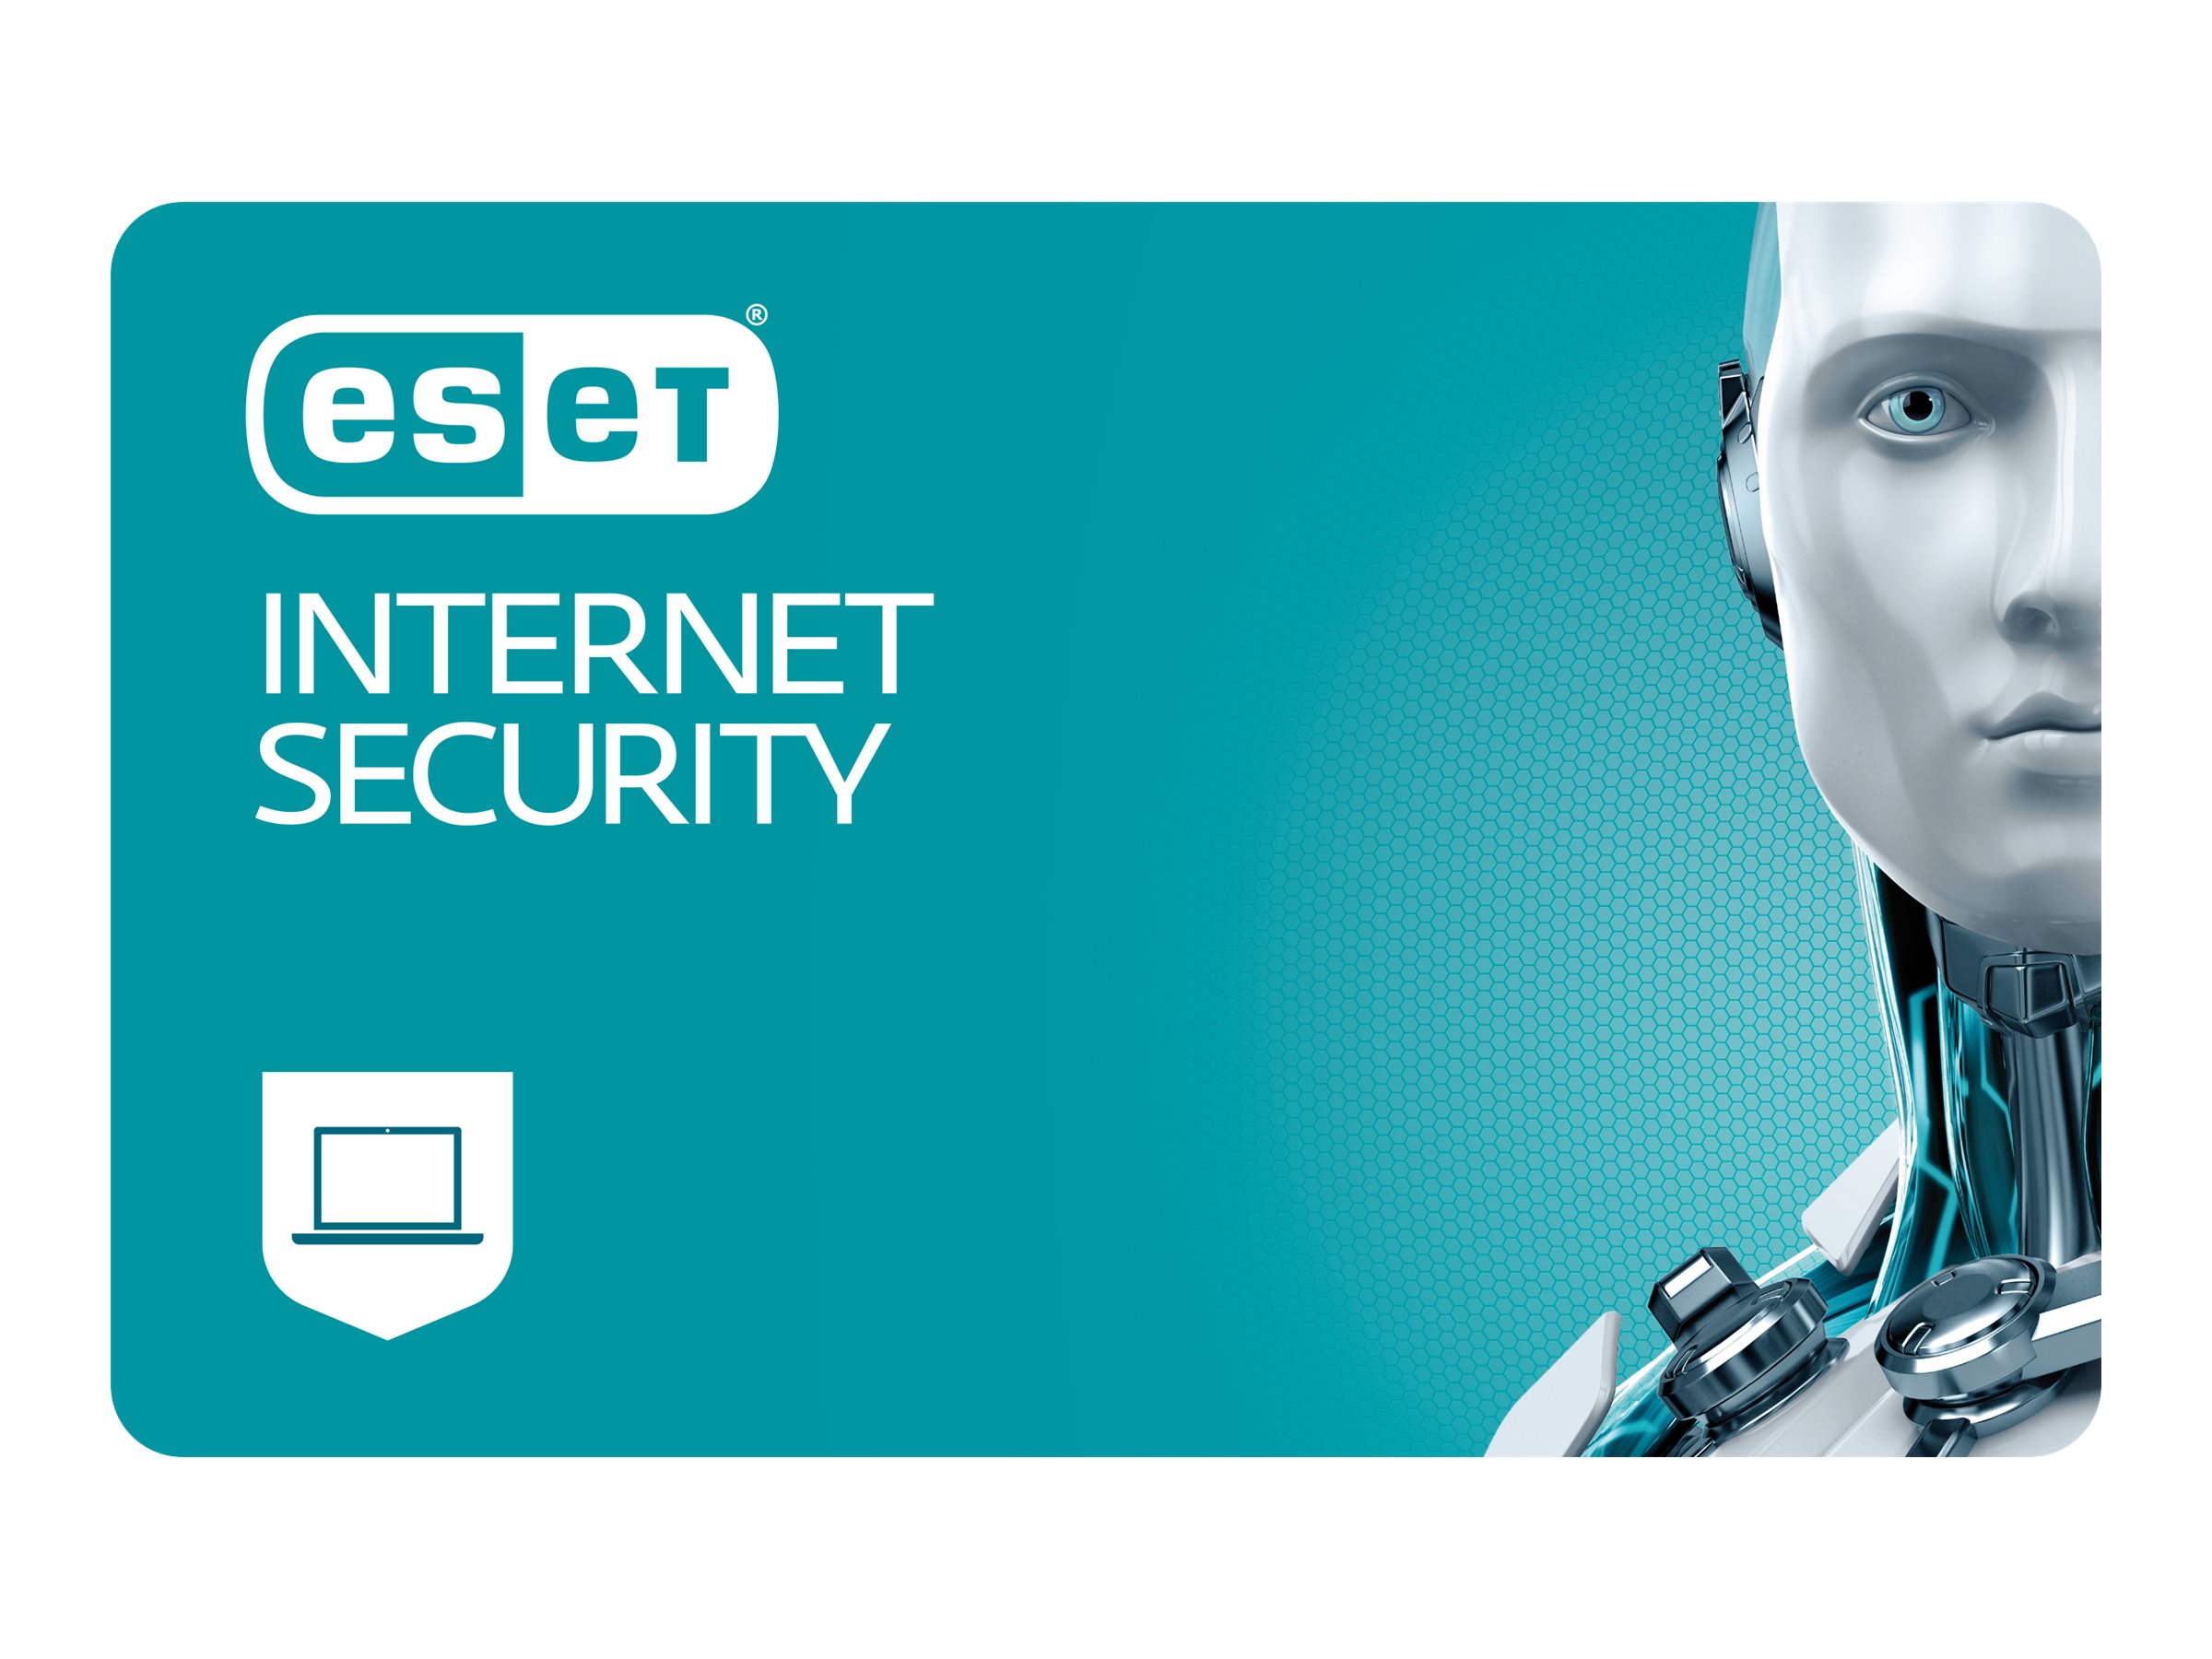 ESET Internet Security Lizenz per Devices (1 Device) inklusive 2 Jahre Aktualisierungsgarantie